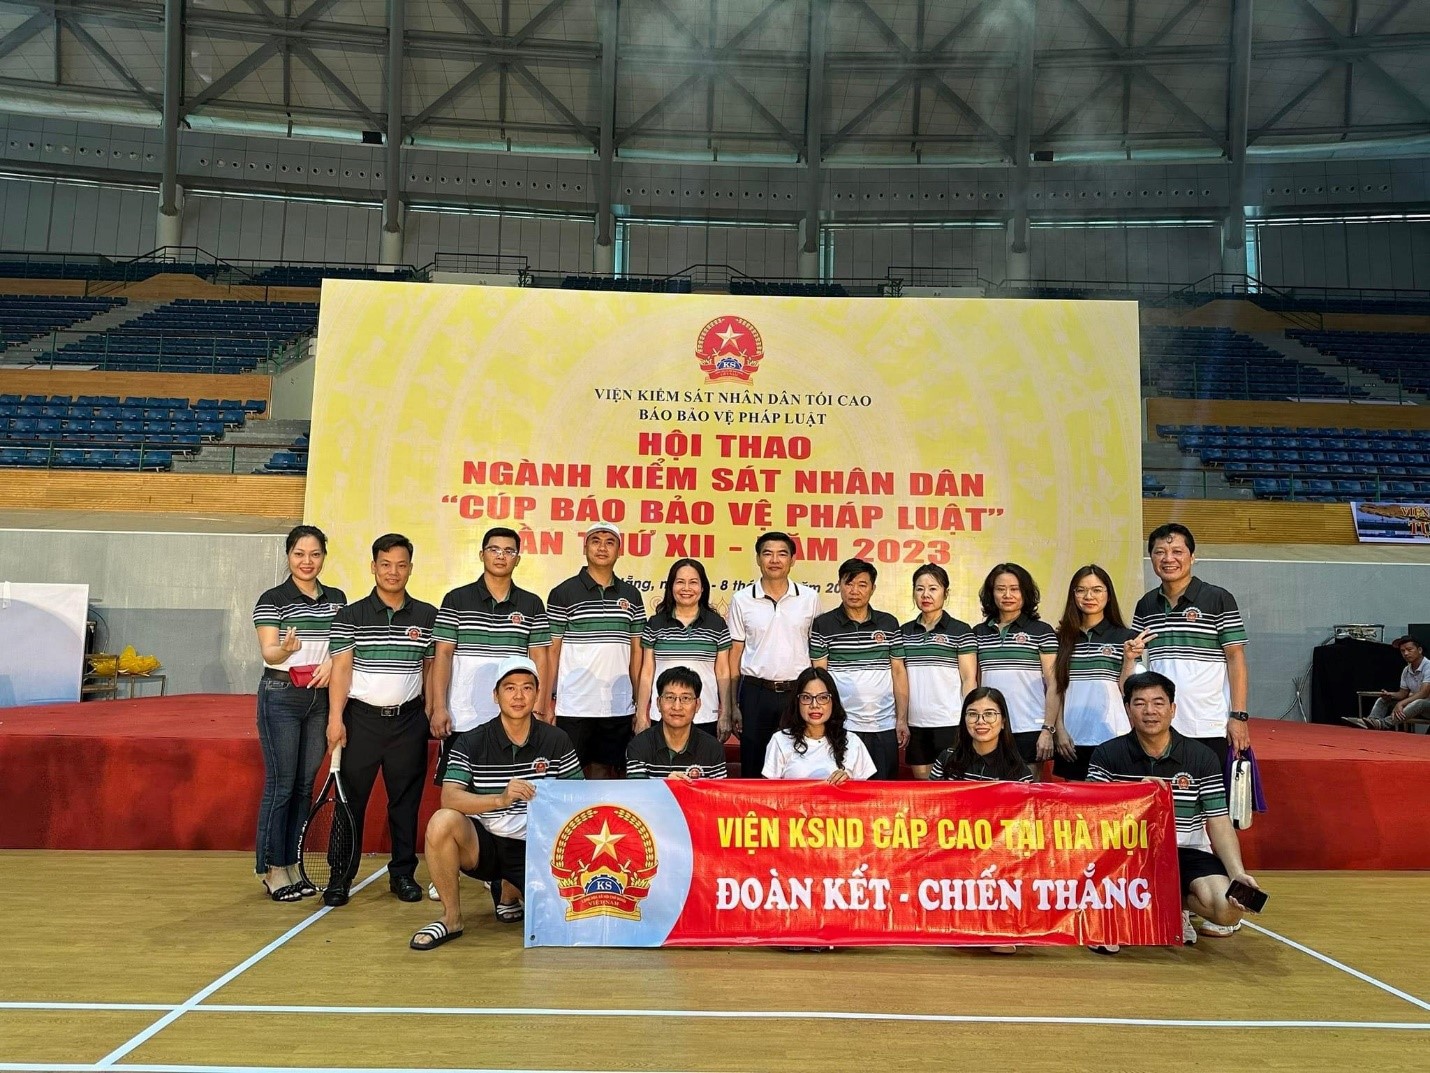 Đoàn thể thao Viện kiểm sát nhân dân cấp cao tại Hà Nội tham dự Hội thao ngành Kiểm sát nhân dân “ Cúp Báo Bảo vệ pháp luật lần thứ XII” năm 2023